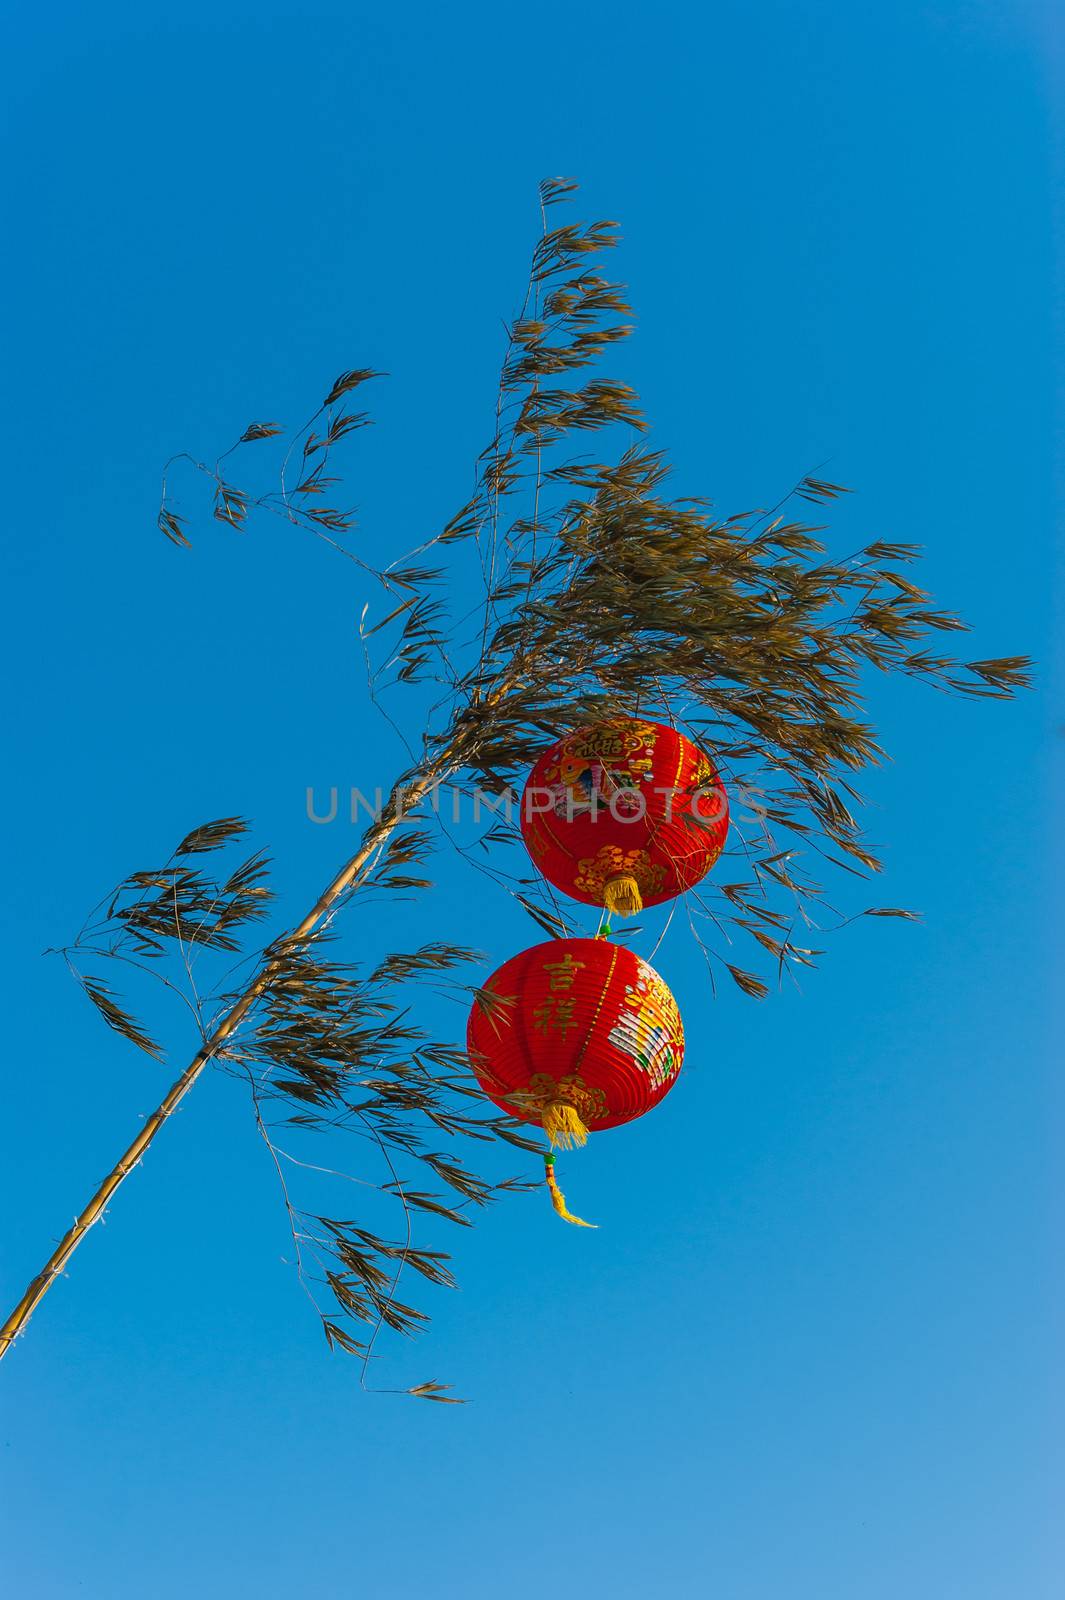 Chinese lanterns in a tree by oleg_zhukov